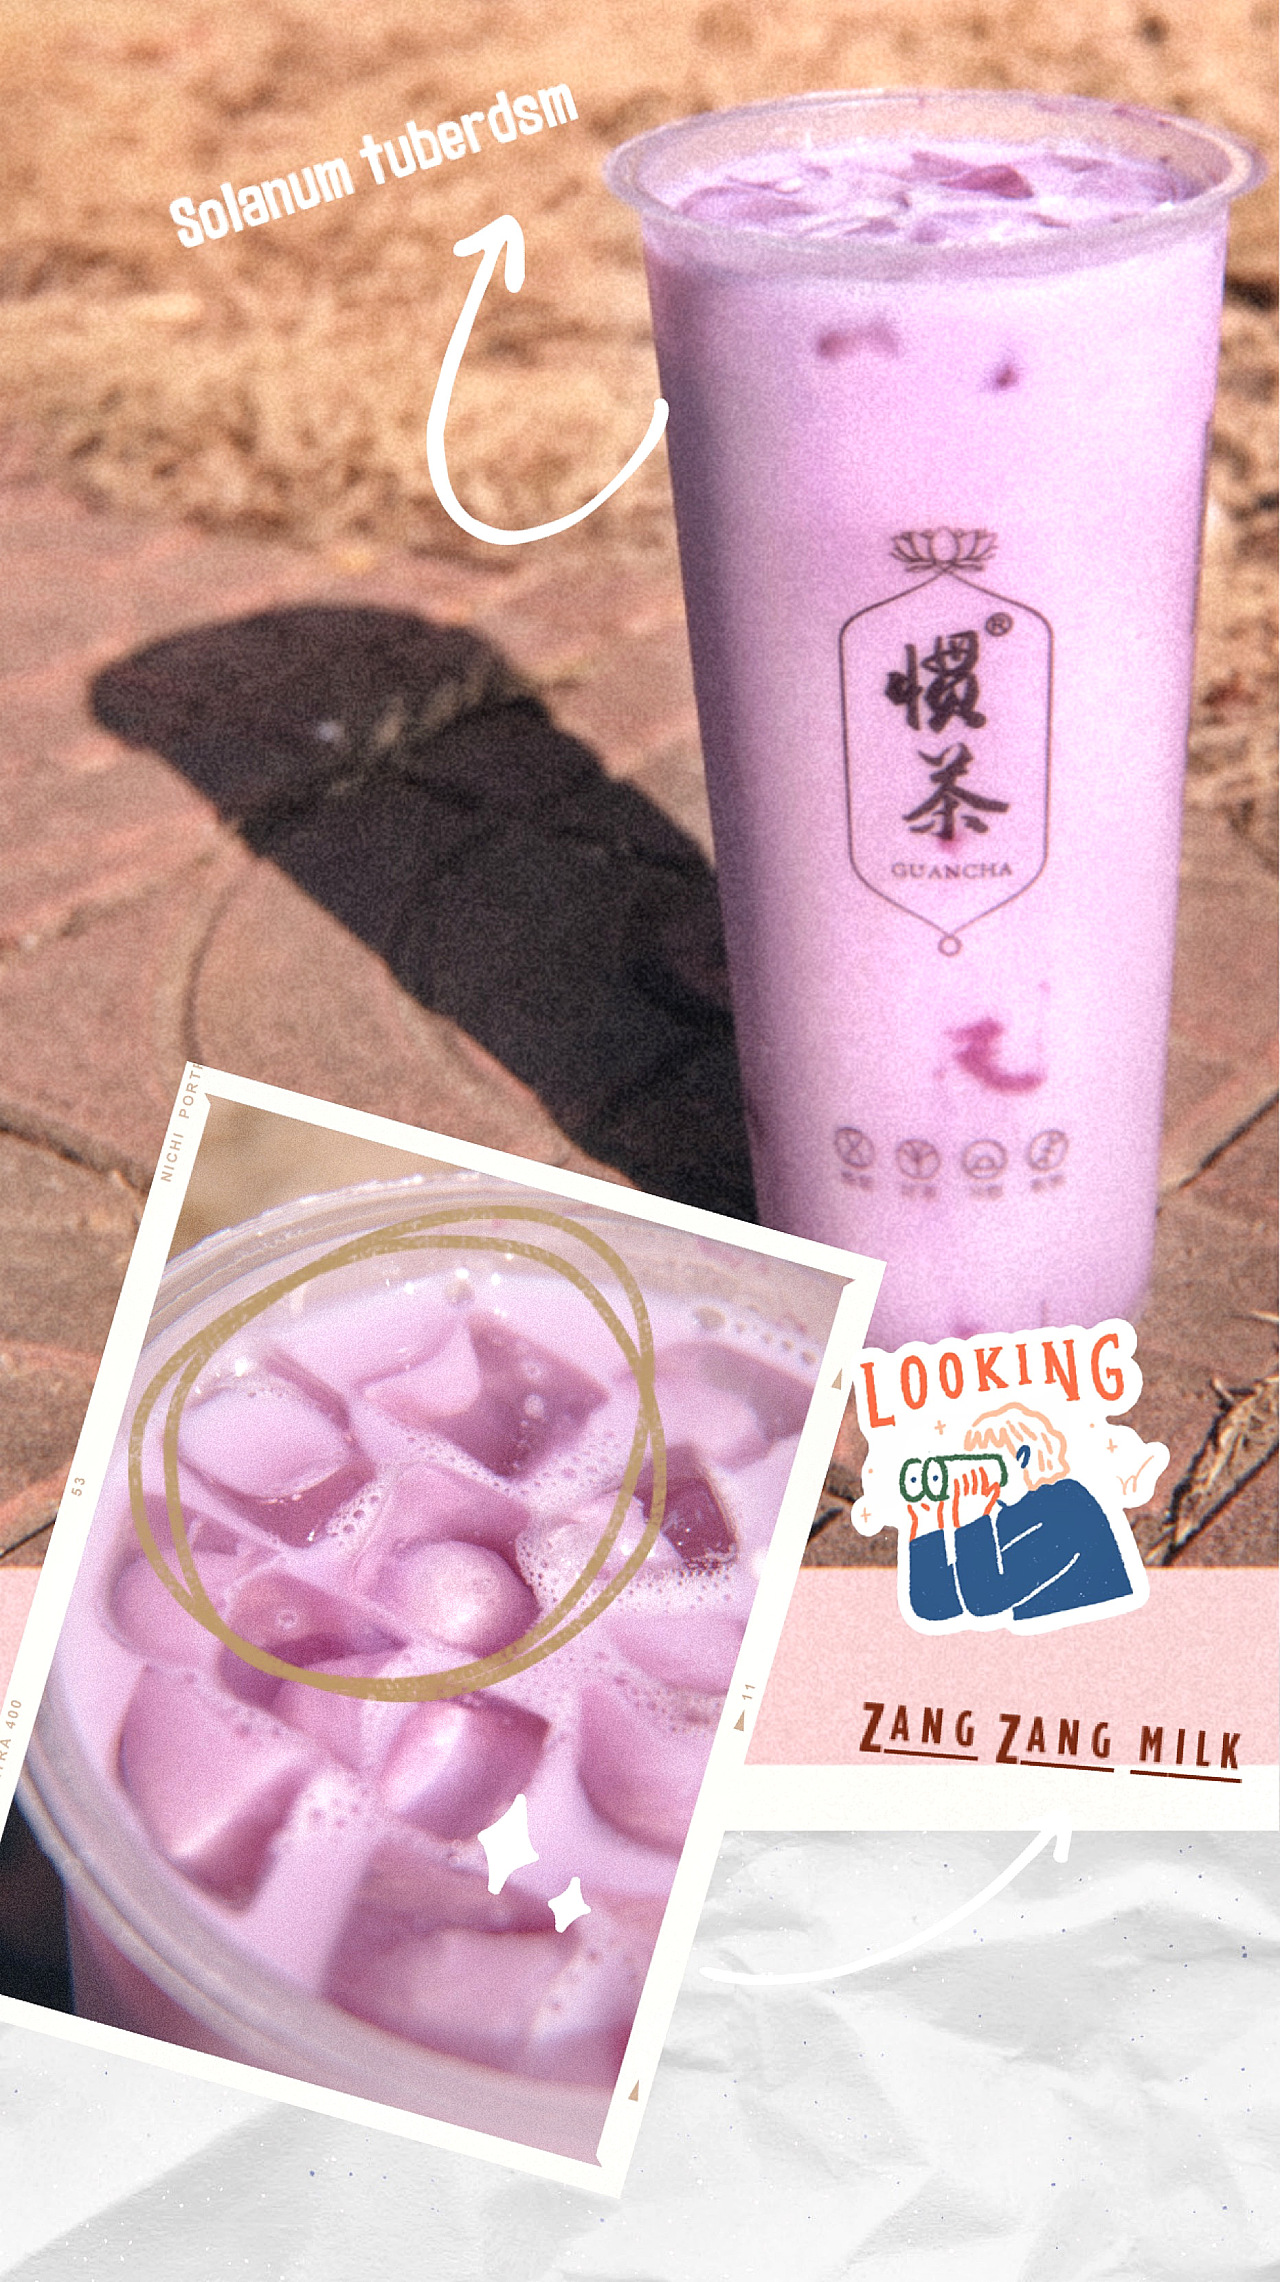 醇厚蓝莓炒酸奶 石家庄街喜餐饮管理有限公司